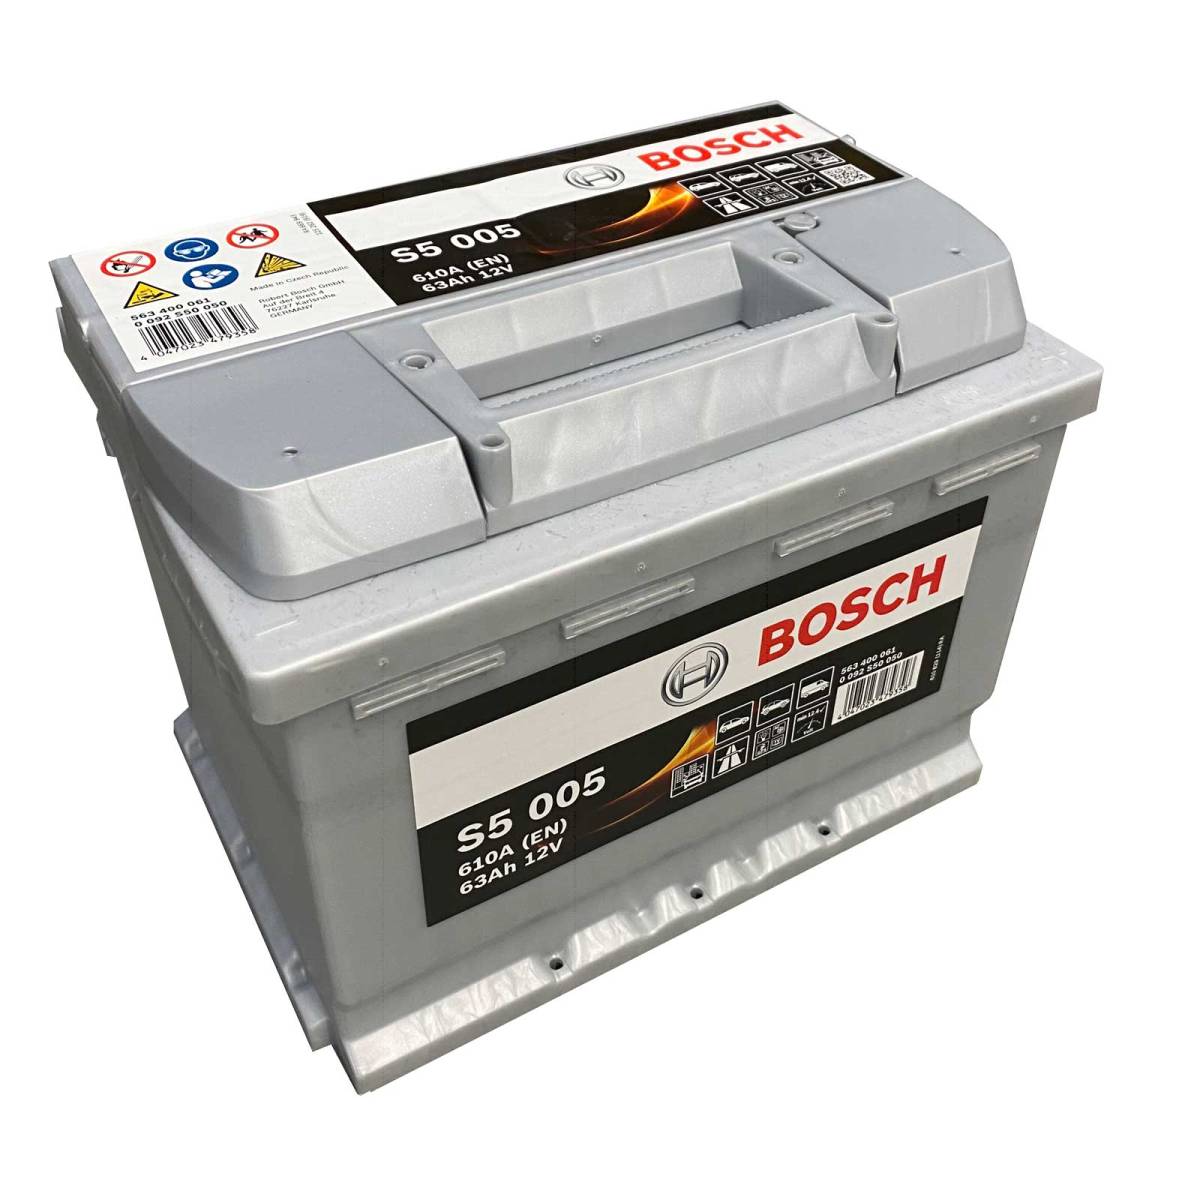 Batteria auto Bosch S5 005 563 400 061 12V 63Ah 600A